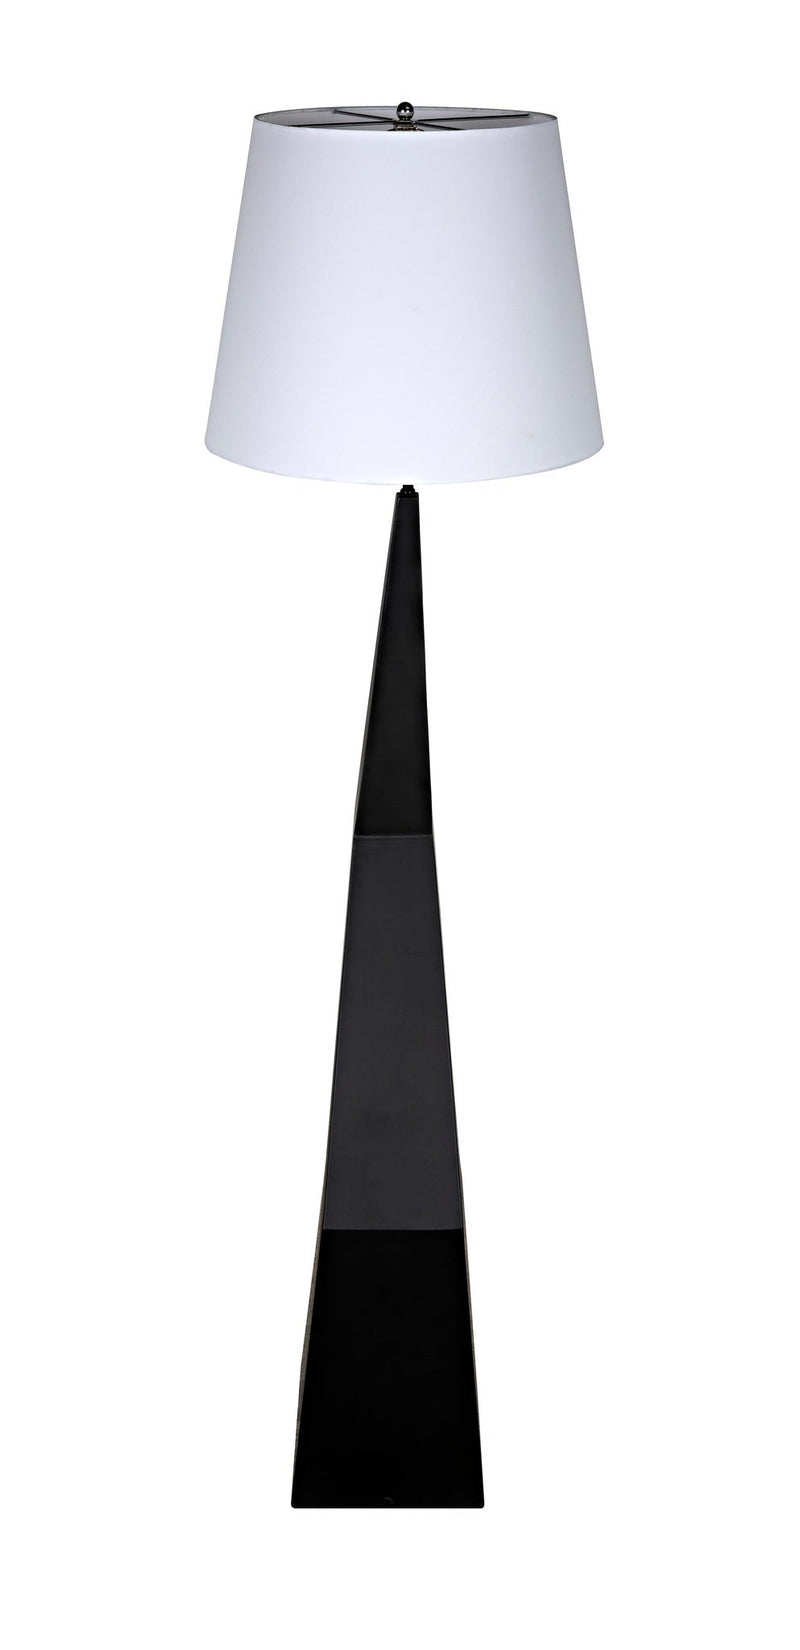 Rhombus Floor Lamp with Shade, Black Metal-Floor Lamps-Noir-LOOMLAN